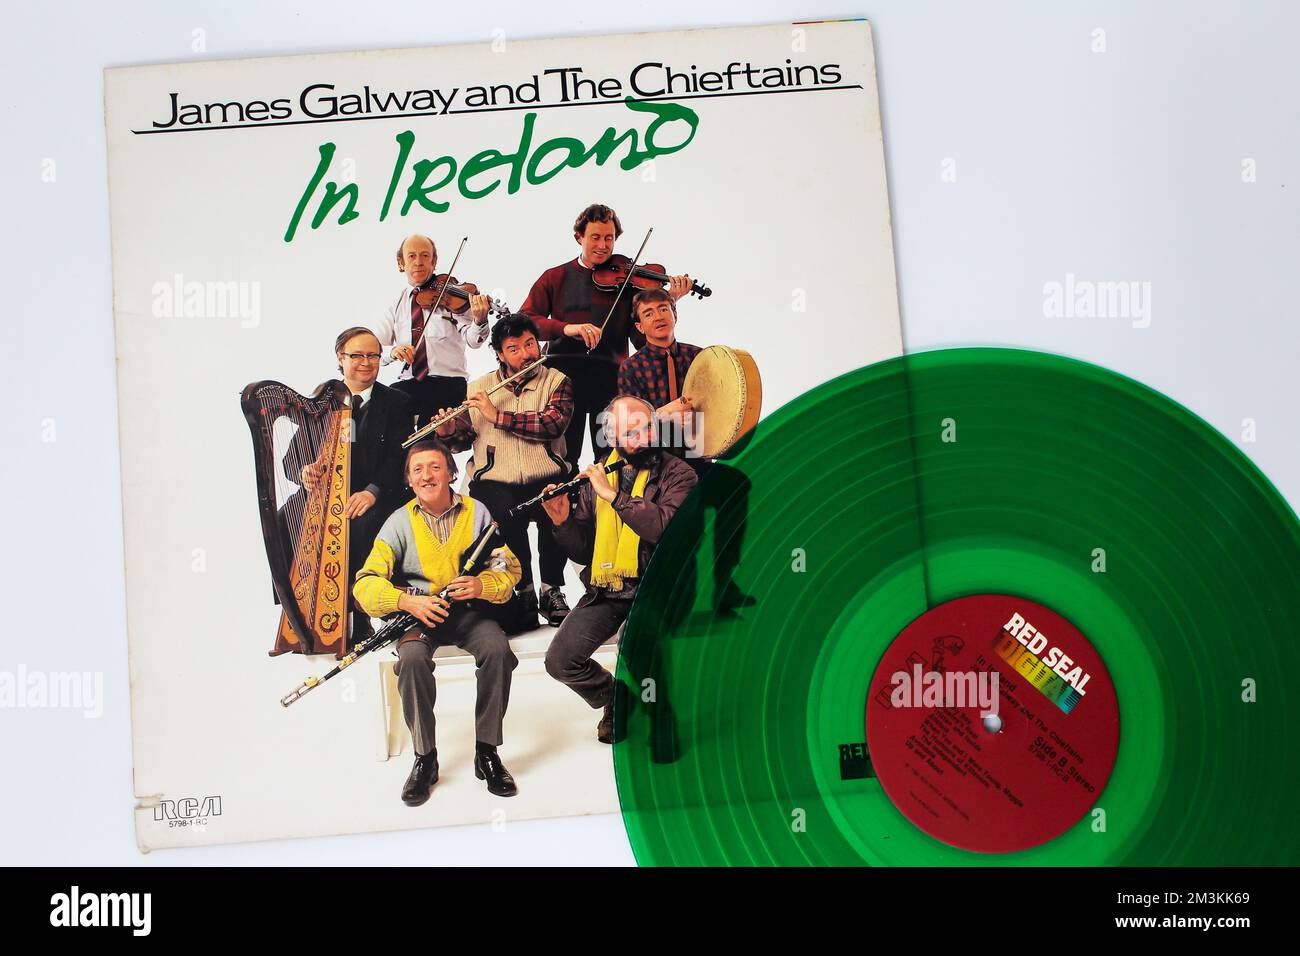 L'artista folk, mondiale e country James Galway e l'album musicale The Chieftains su disco LP con dischi in vinile. Intitolato: James Galway e i Chieftains in Irlanda Foto Stock